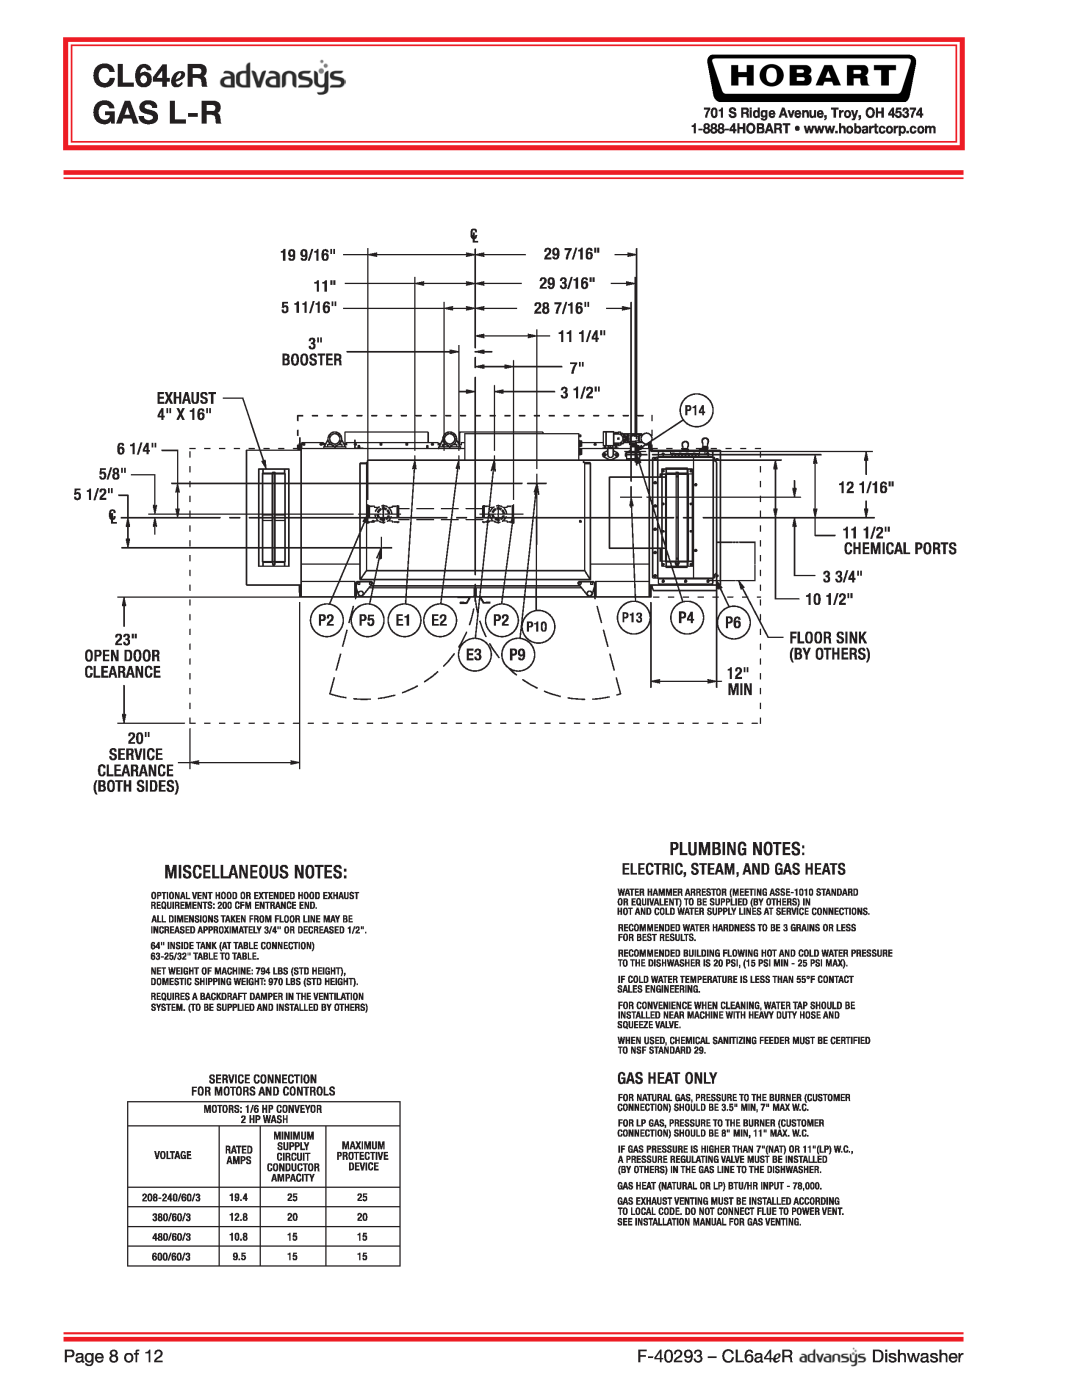 Hobart CL64ER dimensions CL64eR GAS L-R, Page 8 of, F-40293 - CL6a4eR, Dishwasher, S Ridge Avenue, Troy, OH 